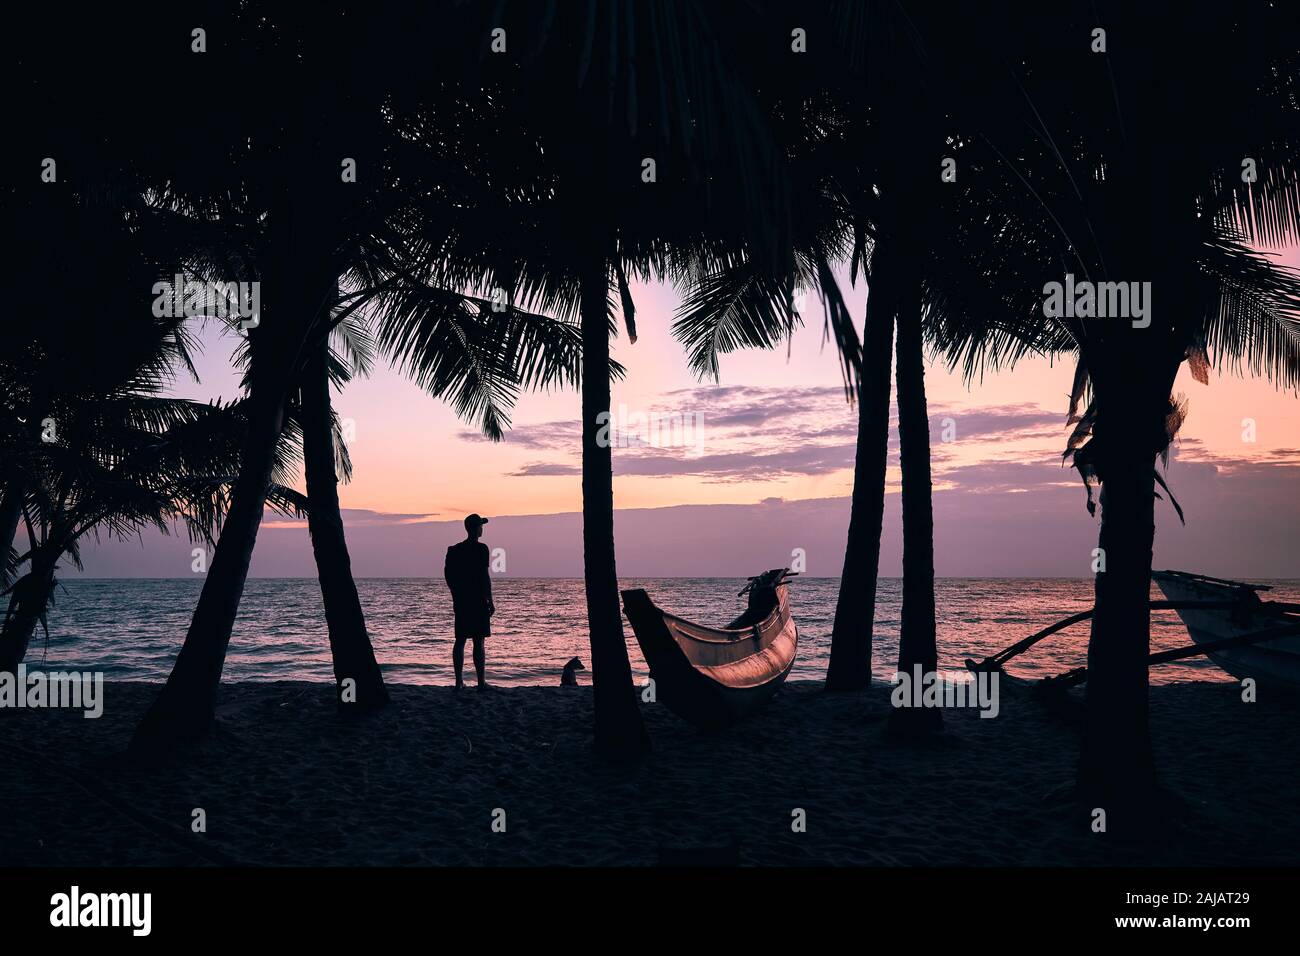 Silhouette von jungen Mann mit Hund unter Palmen. Reisende stehen auf Strand und Meer bei Bunte sunrise. Sri Lanka Stockfoto